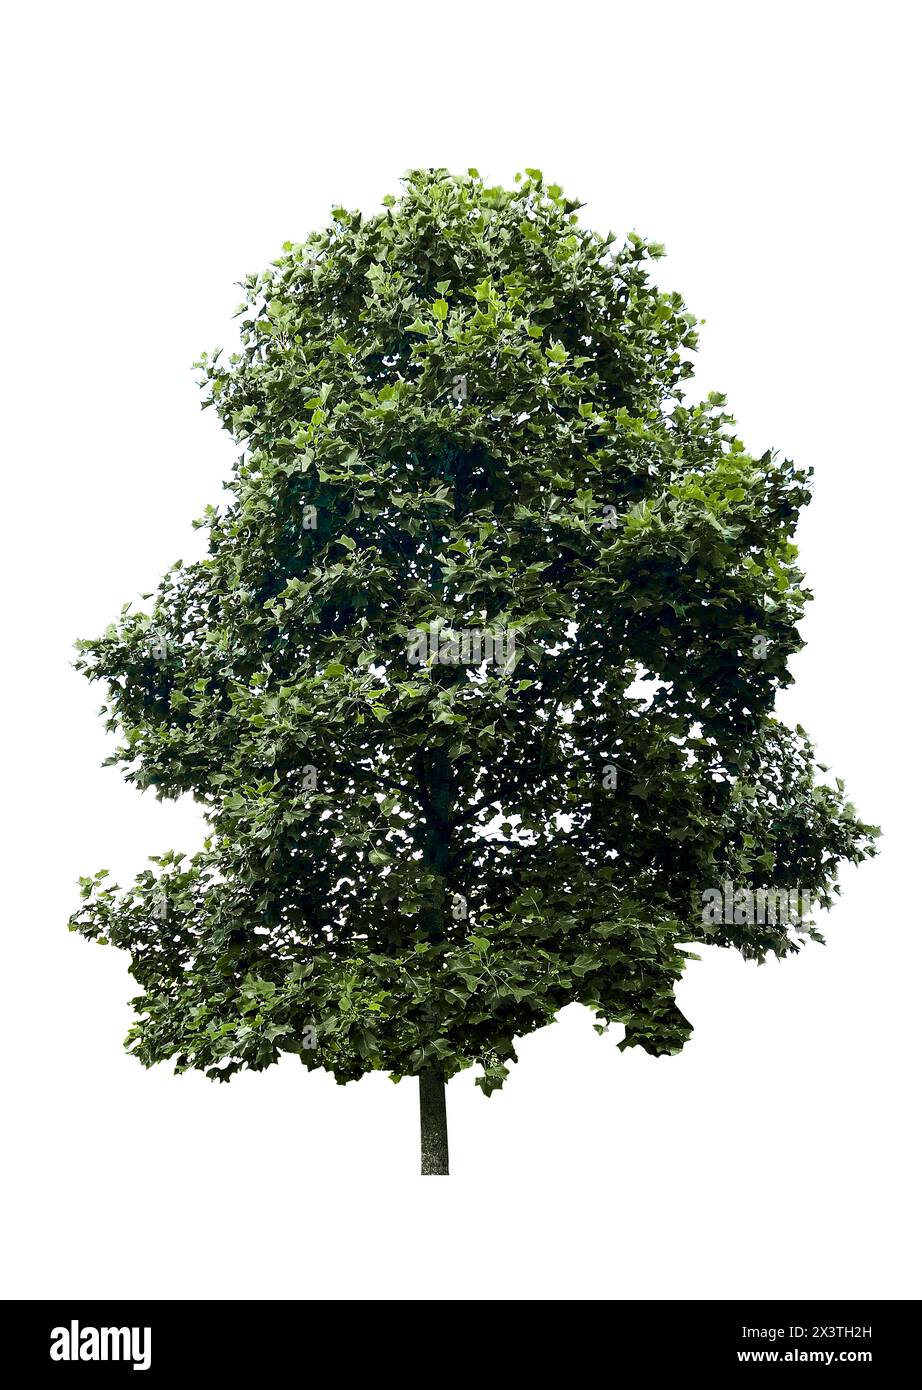 Wunderschöner Baum mit grünen Blättern, isoliert auf weiß Stockfoto